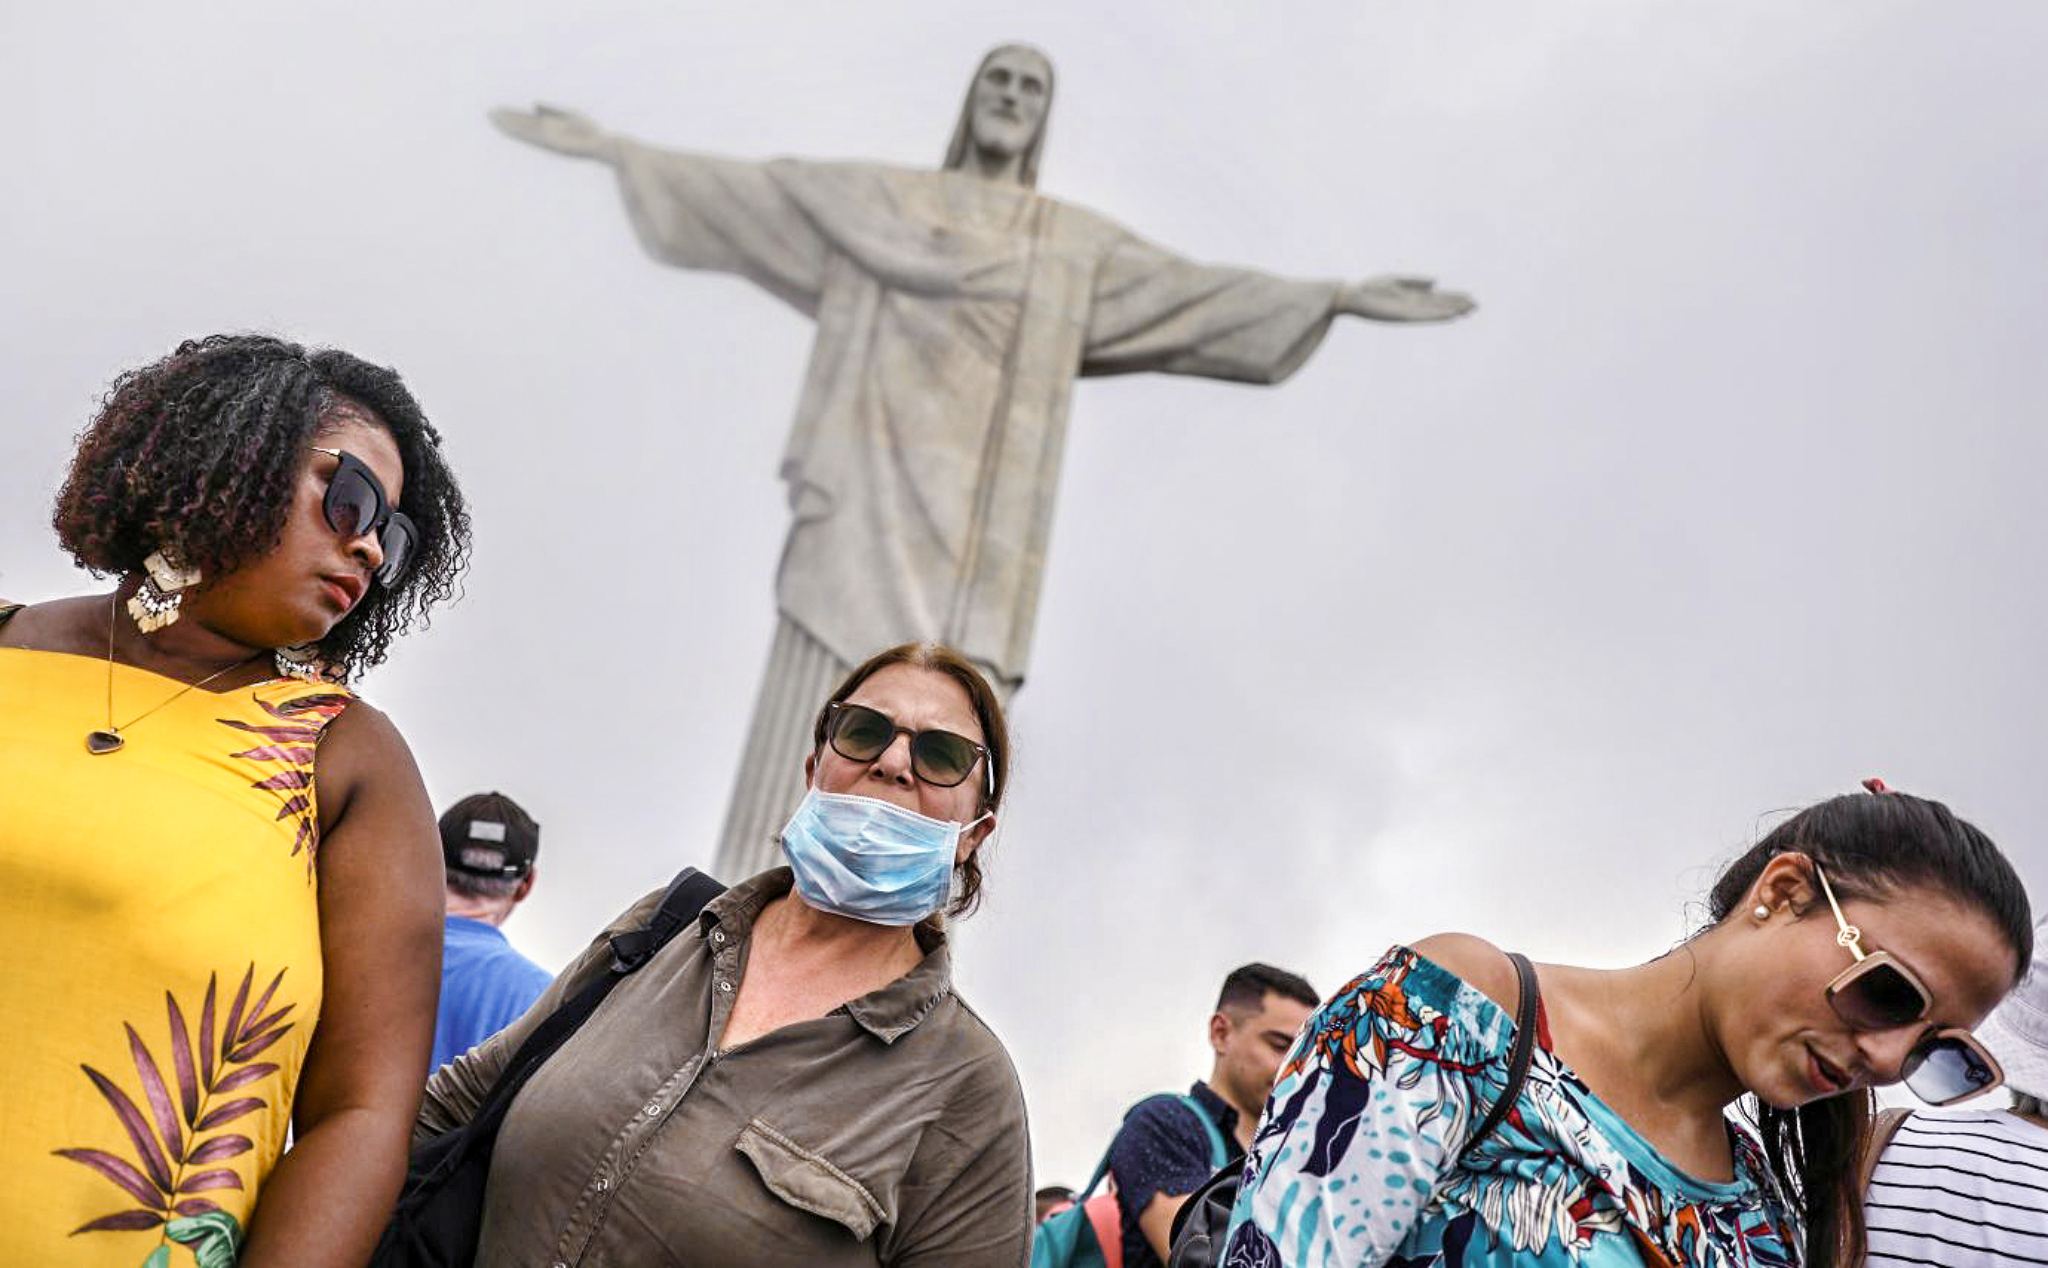 Chuyện ở Brazil: Cảnh sát điều tra việc nhân viên y tế tiêm các liều "vaccine gió" cho người dân